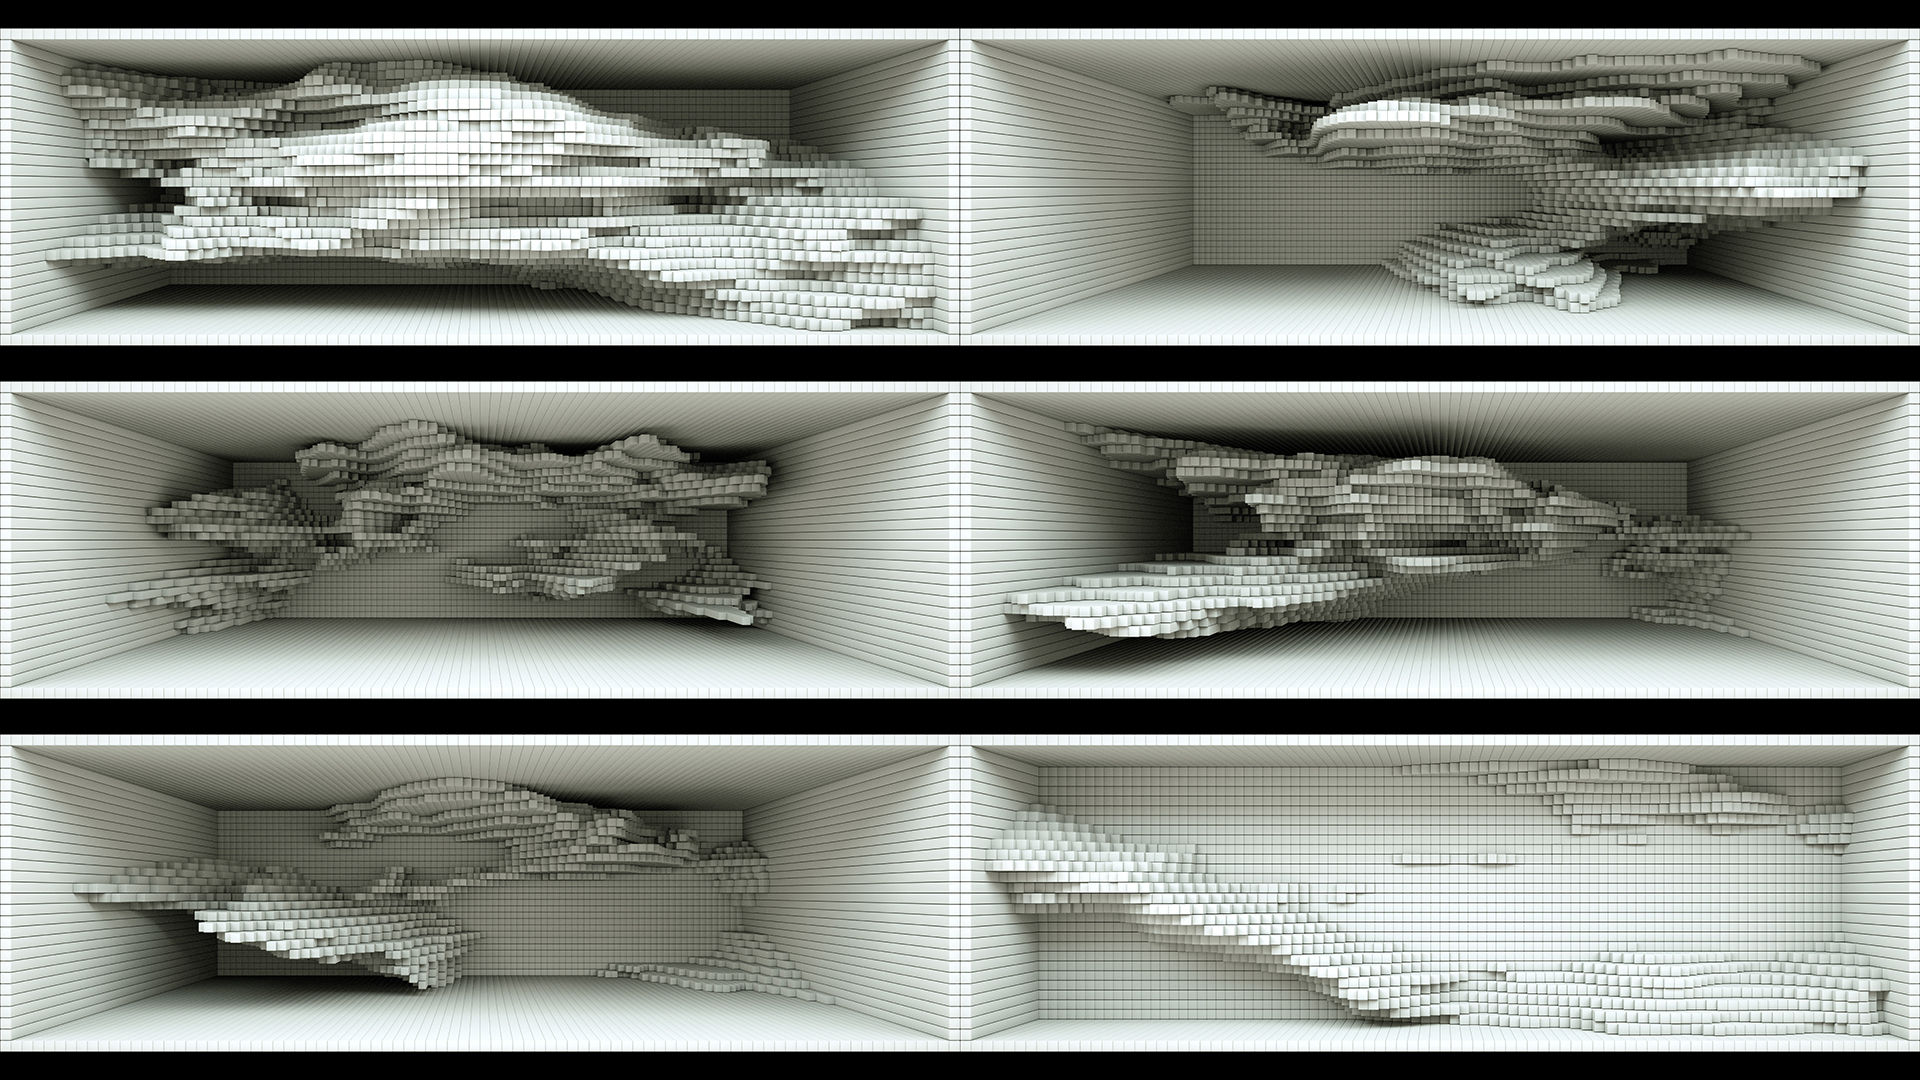 【裸眼3d】视觉空间凹凸起伏变化方块墙体